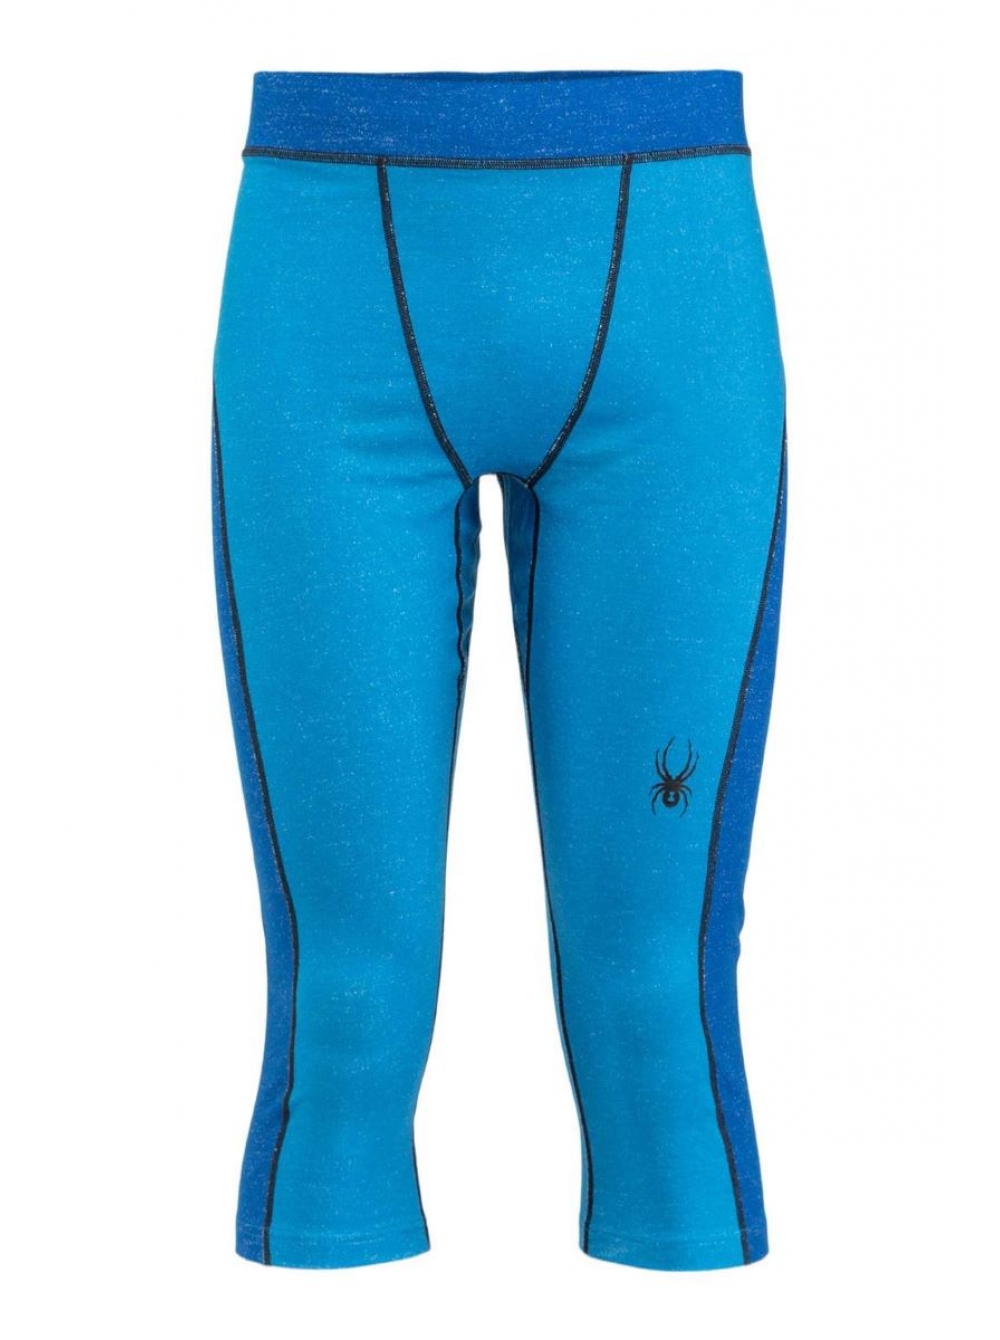 Термобелье мужское штаны Spyder Elevation Boot Top 425: купить в интернетмагазине. Описание, характеристики, цена, отзывы – интернет-магазинaktyv.com.ua